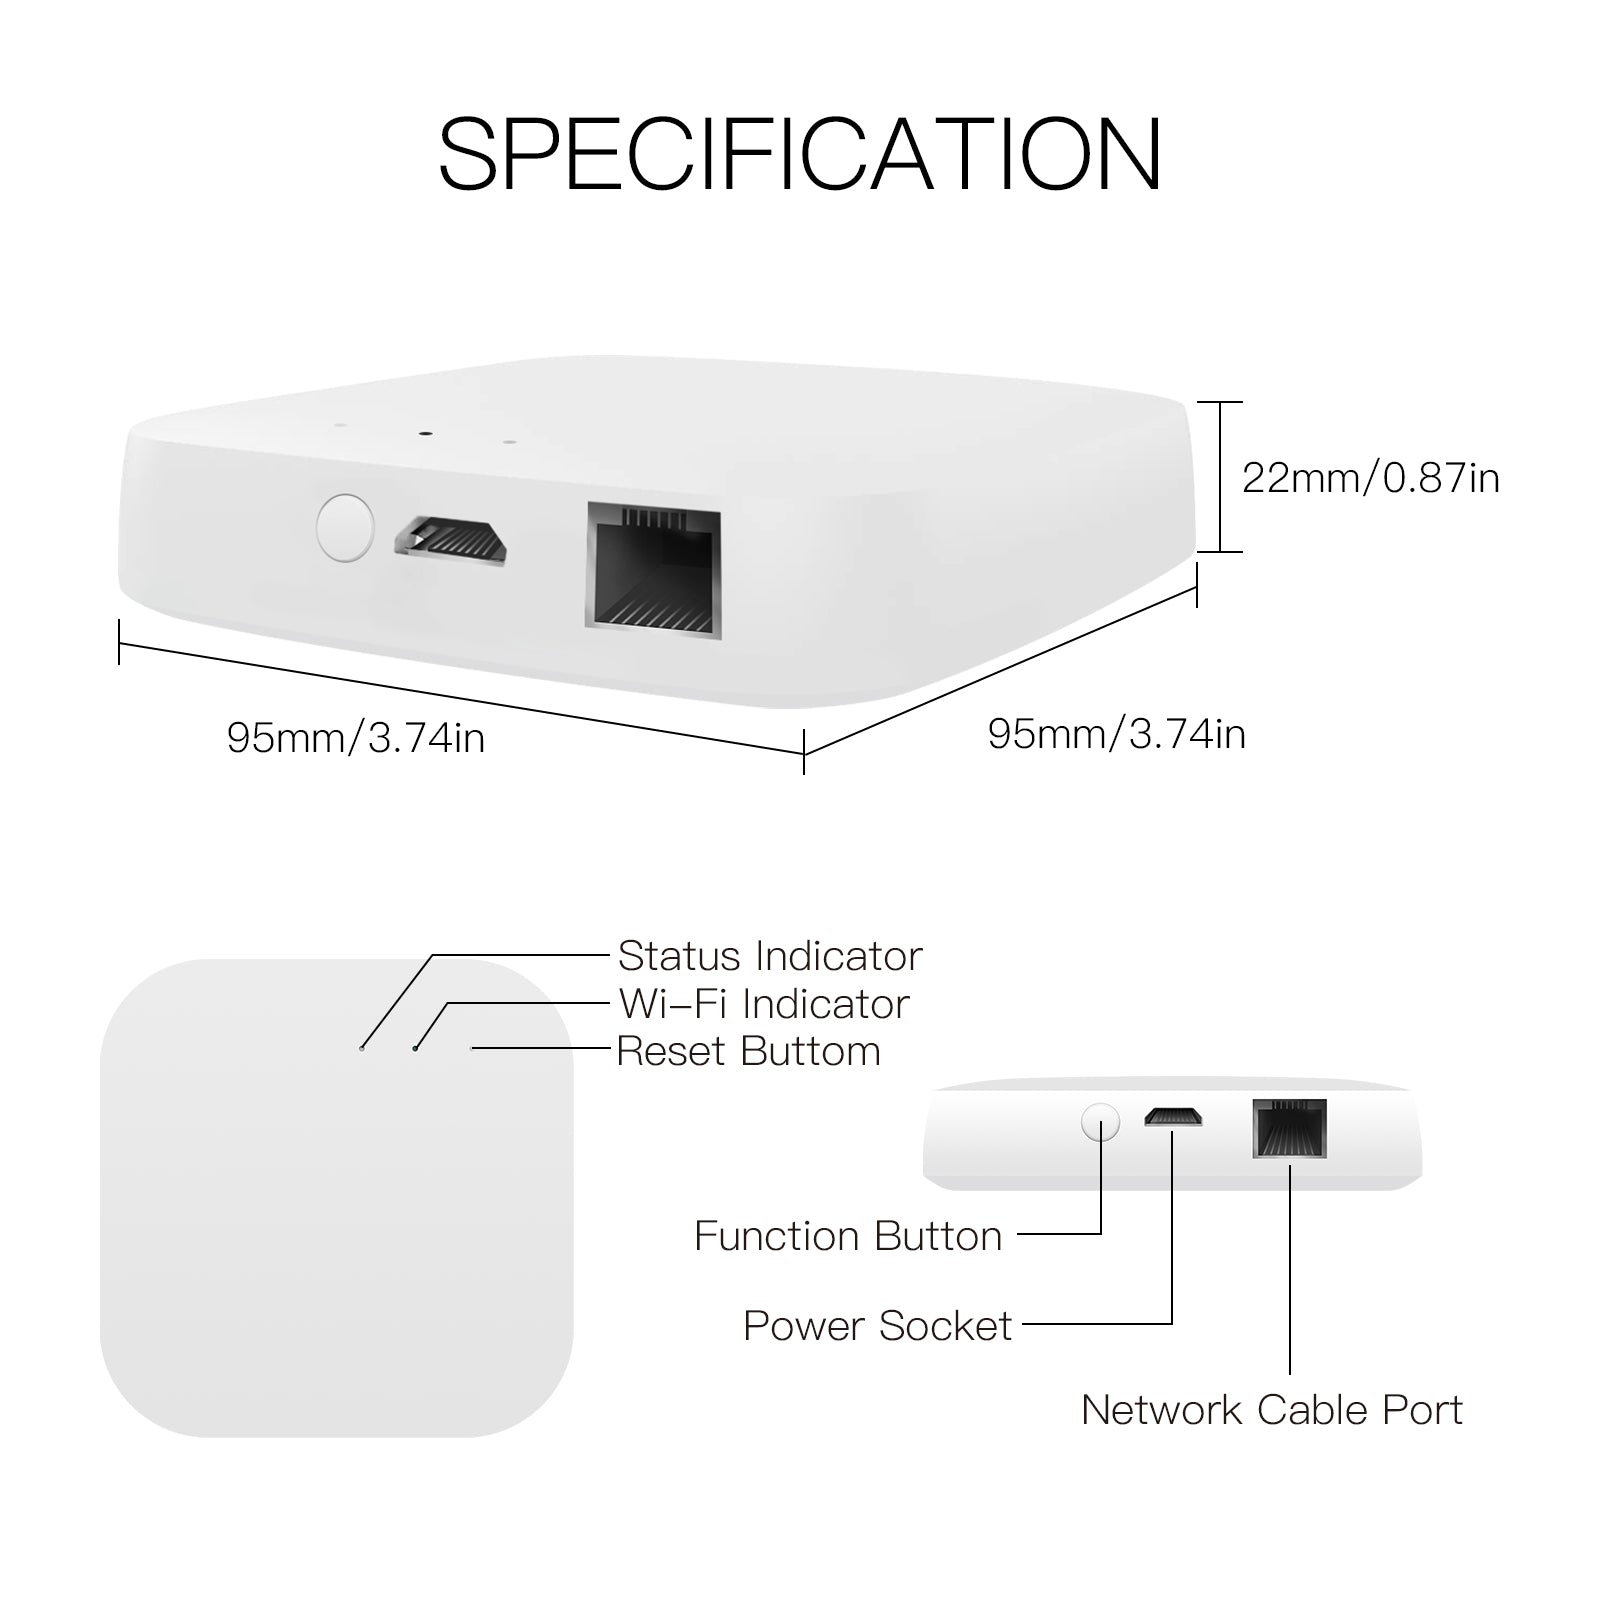 MOES - Zigbee Tuya (Smart Life) home automation box with Ethernet port